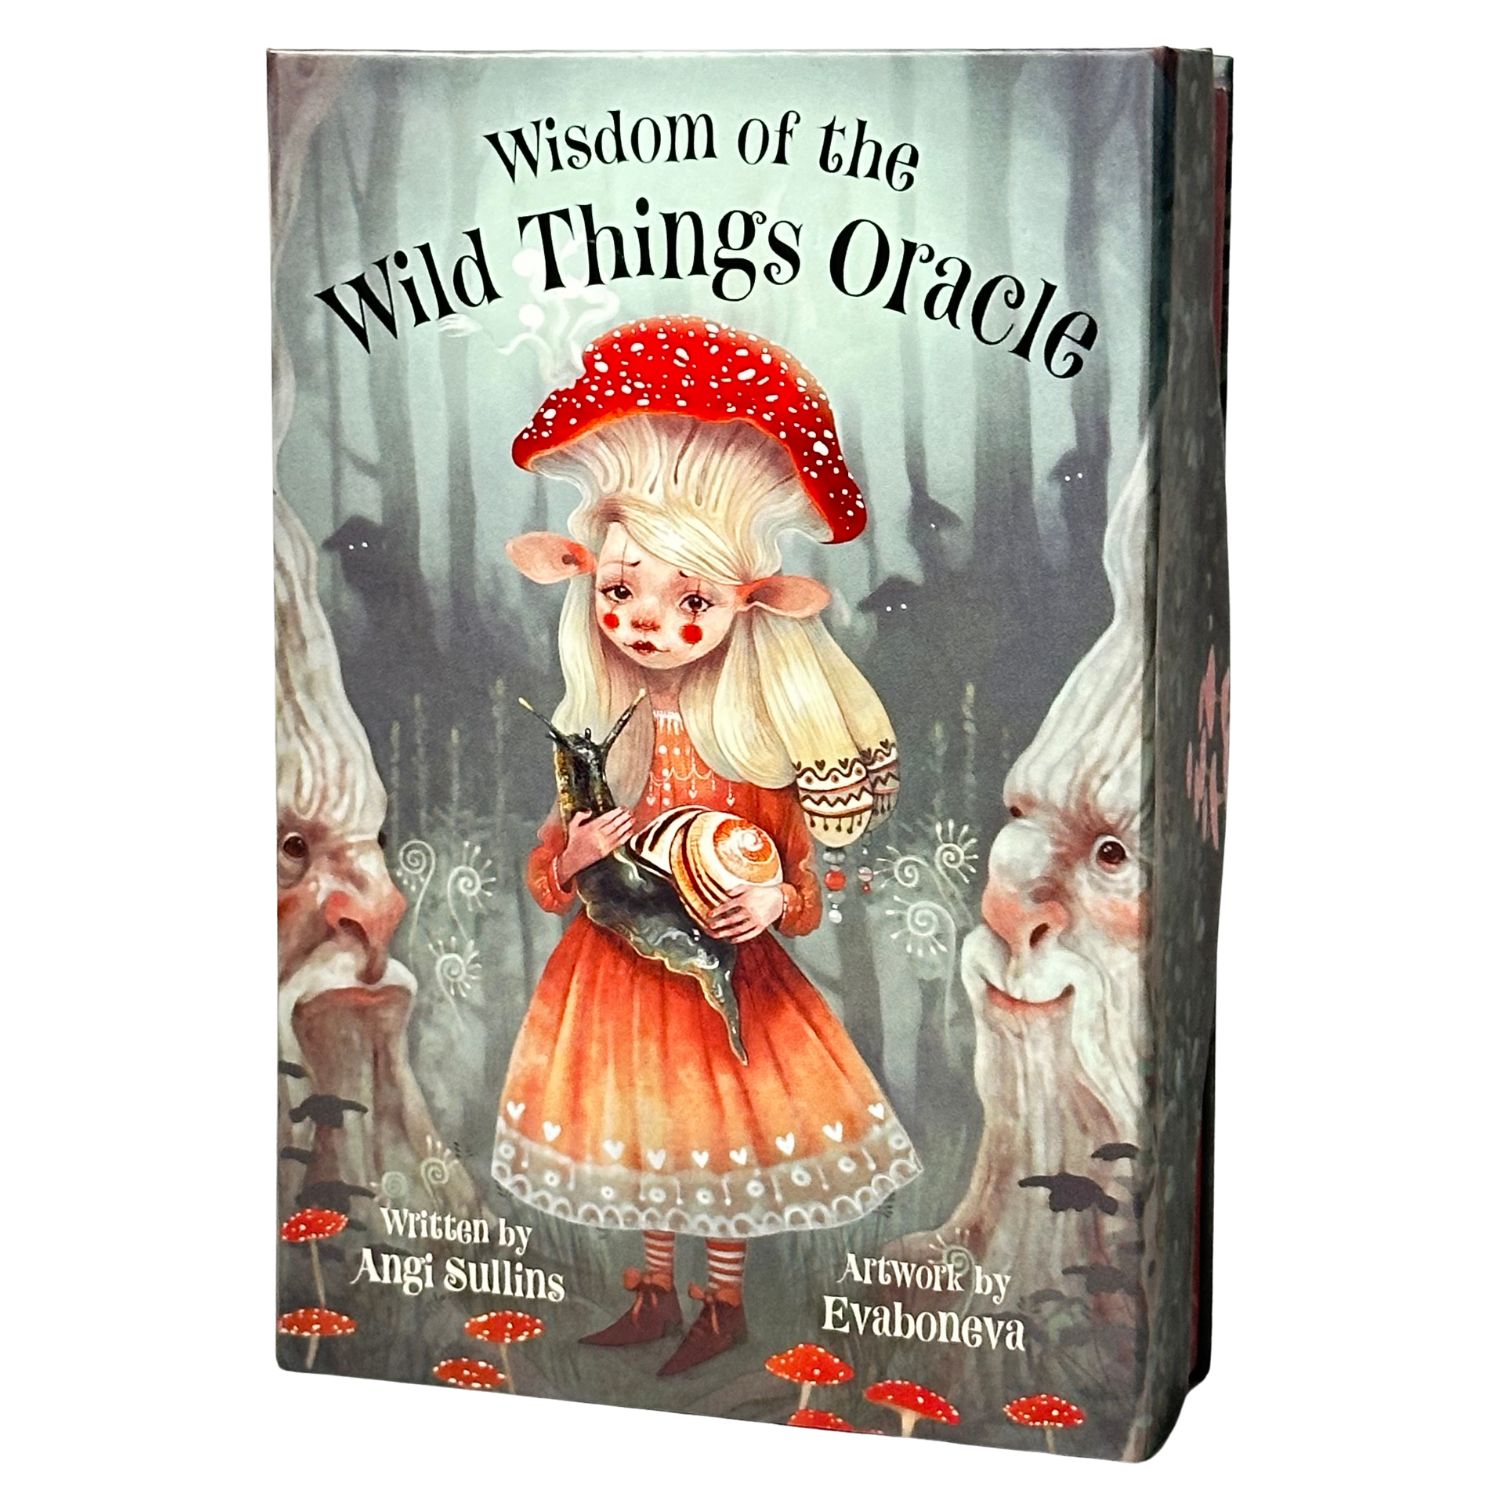 オラクルカード 英語 占い 【 ウィズダム オブ ザ ワイルド シングス オラクル Wisdom of the Wild Things Oracle 】 正規品